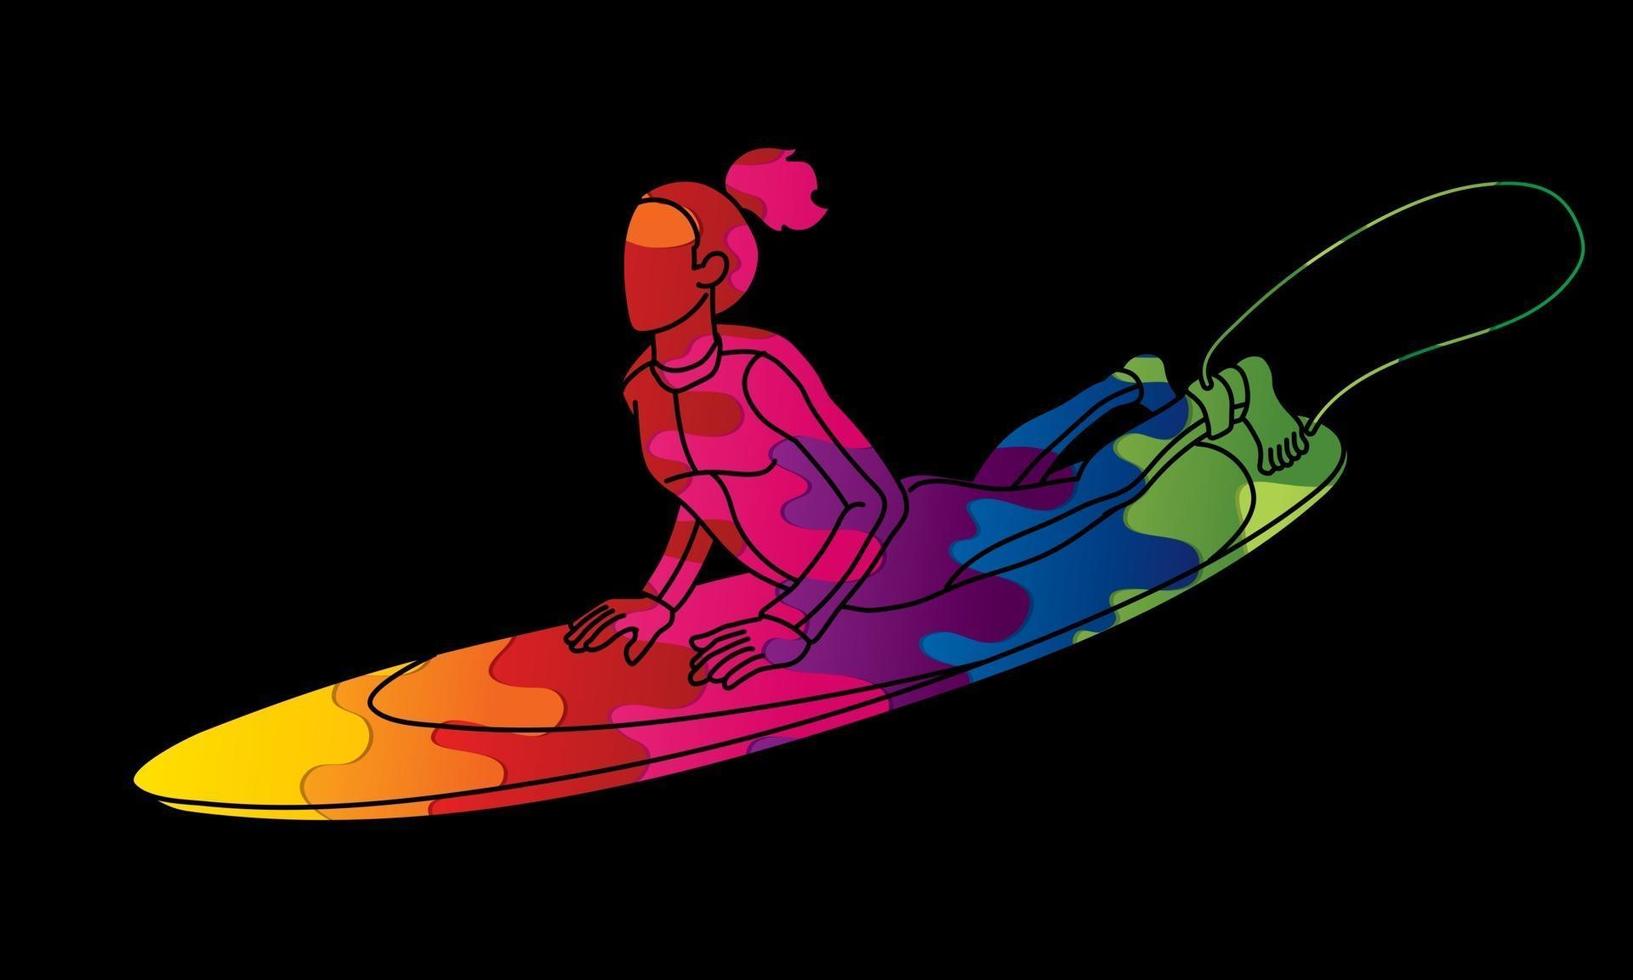 abstrakt kvinnlig surfare som surfar sporthandling vektor